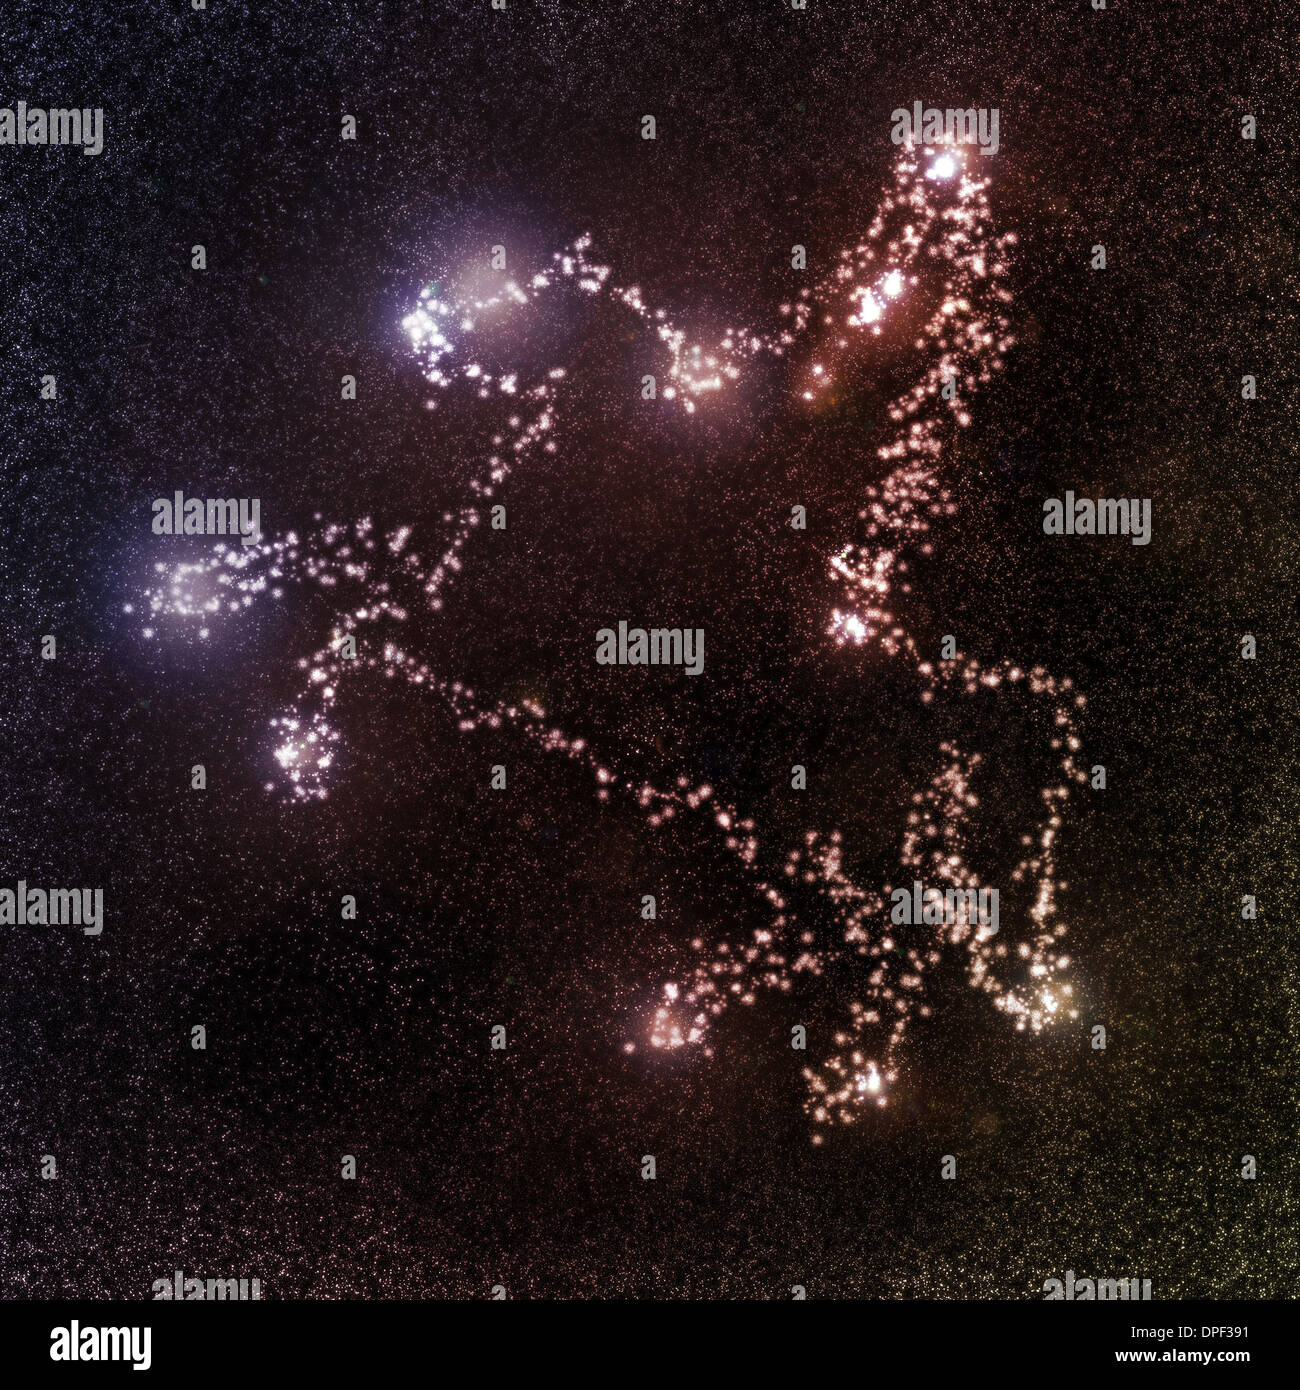 Illustrazione di stellato cavallo alato outer space galaxy Foto Stock